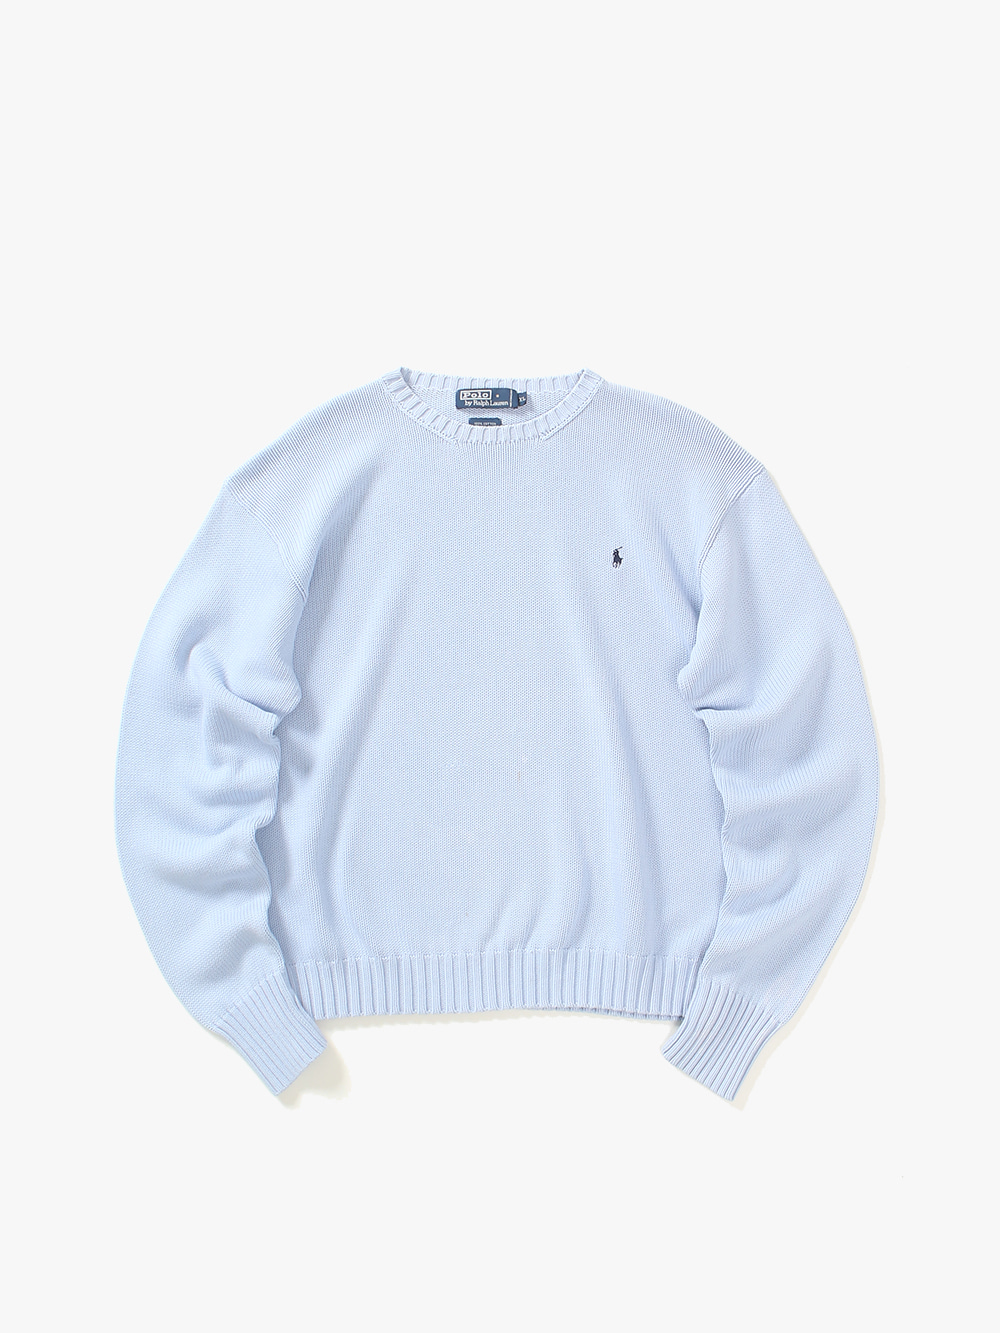 [ XL ] Polo Ralph Lauren Sweater (6400)